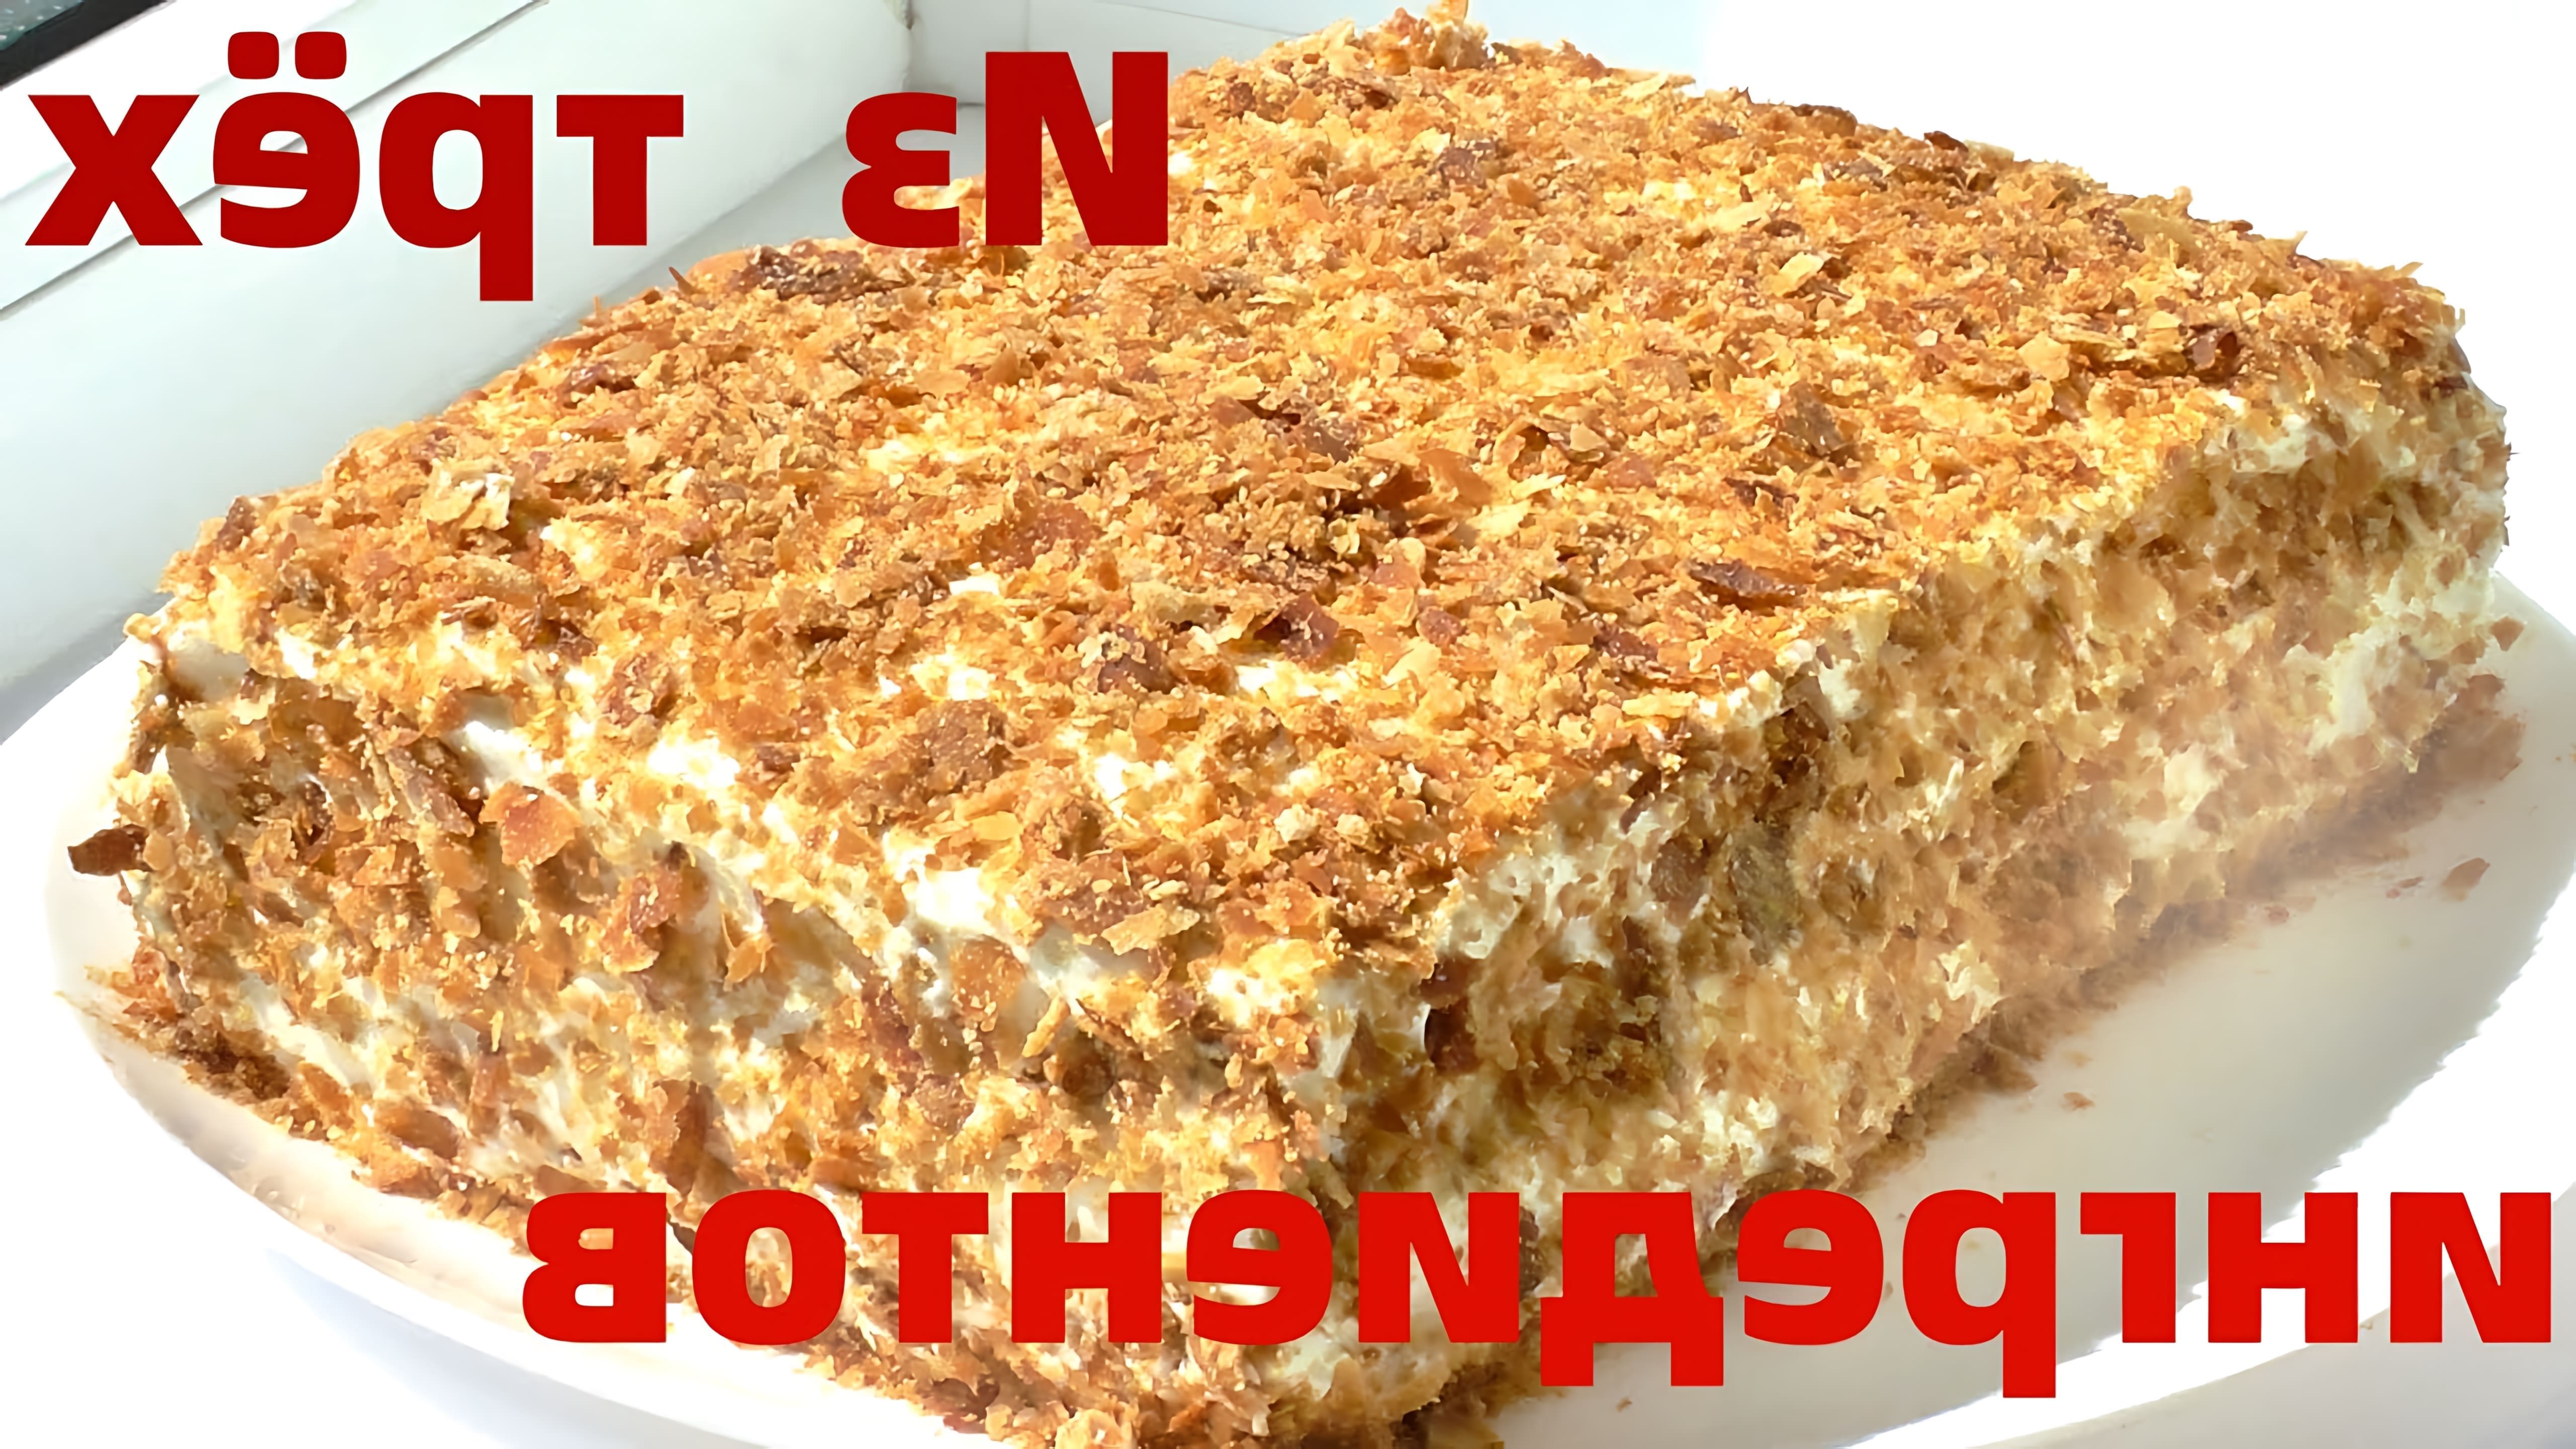 В этом видео демонстрируется рецепт приготовления торта "Наполеон" из готового слоеного теста